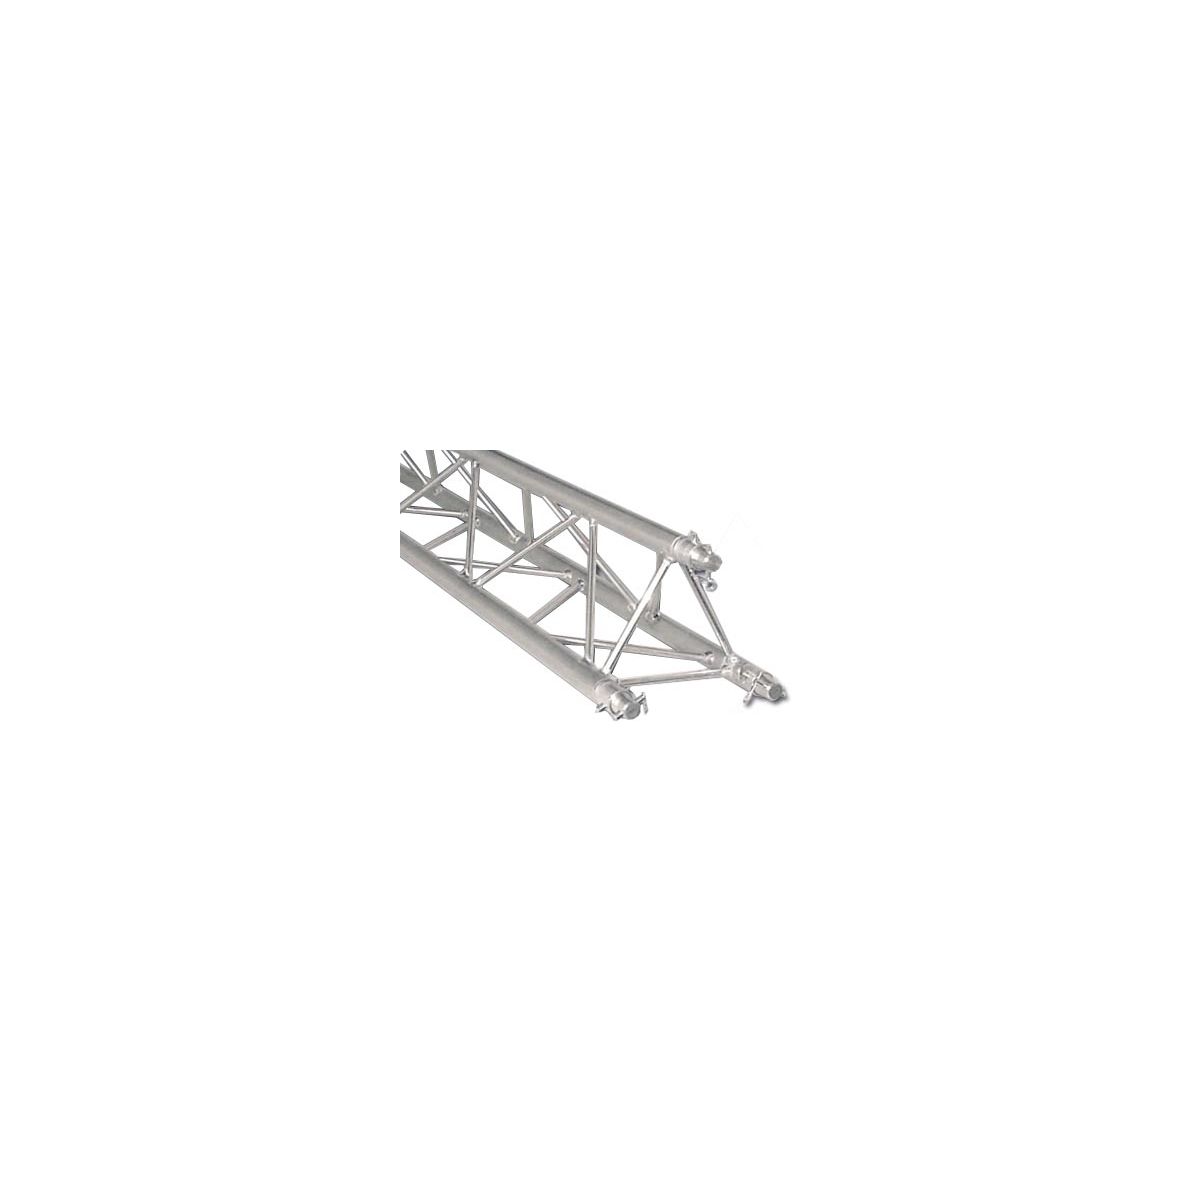 Structures aluminium - Mobiltruss - TRIO DECO 30104